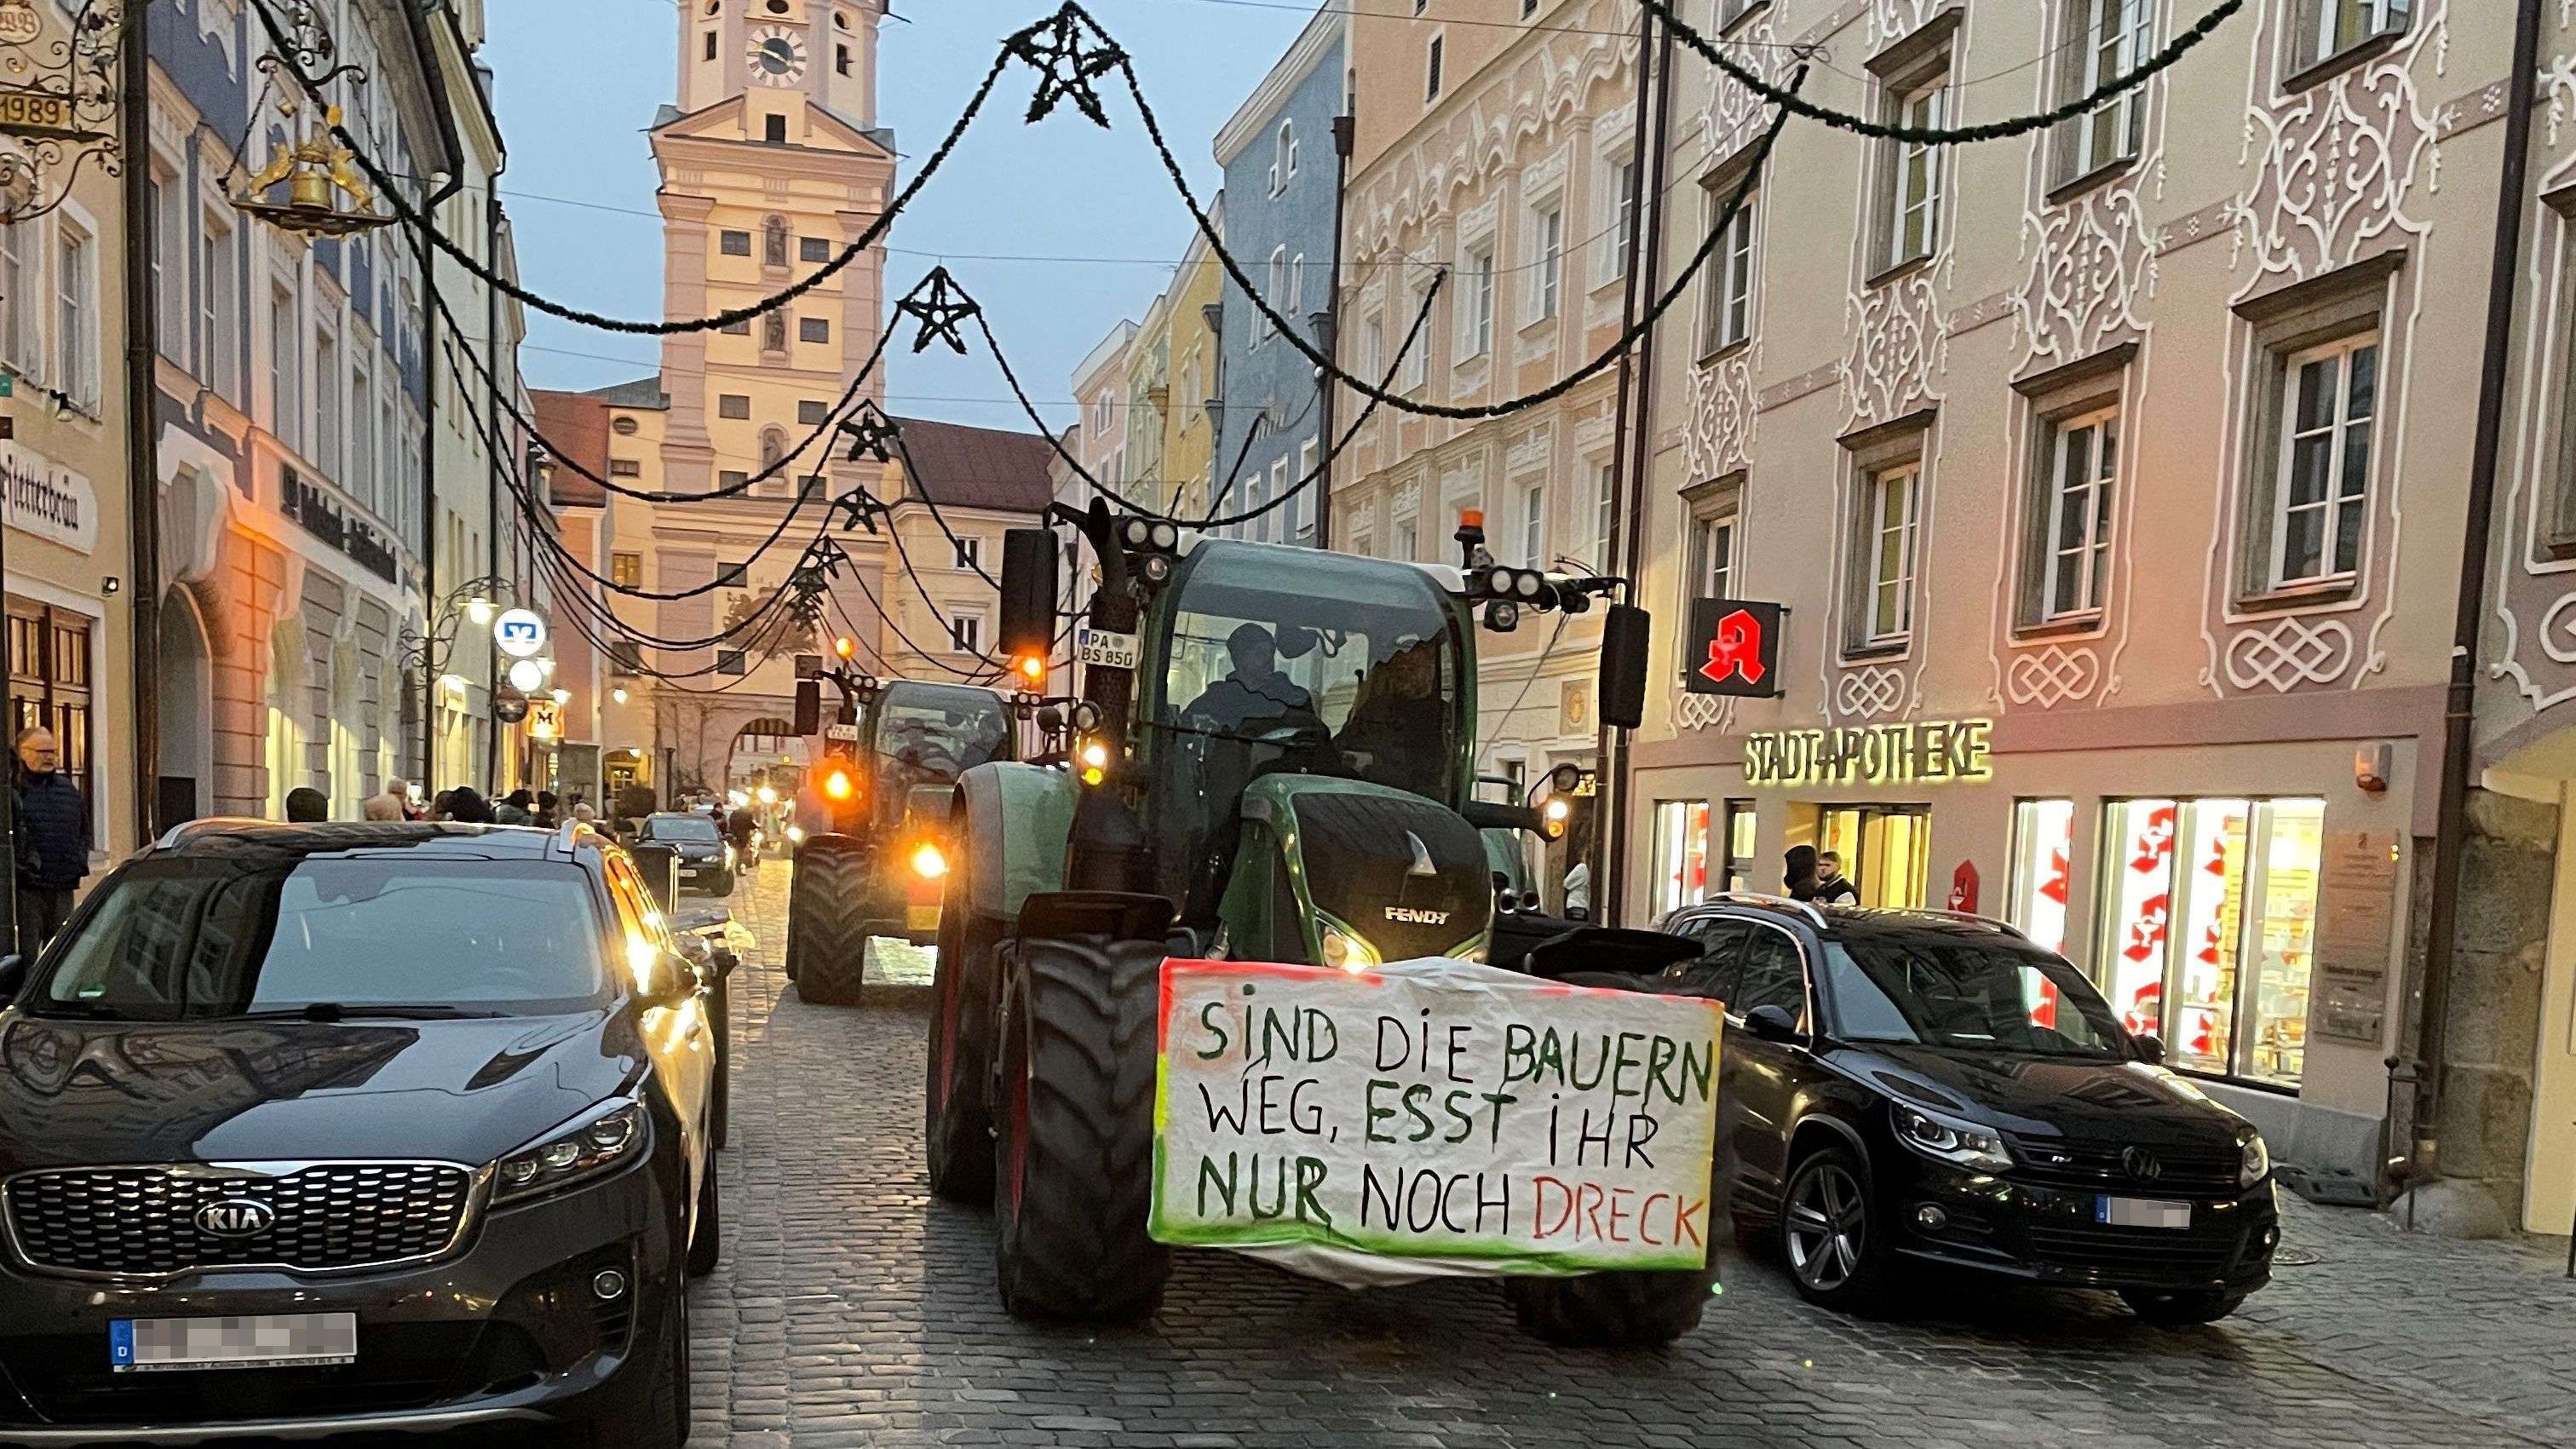 Dutzende Traktoren bei Bauern-Demonstration in Vilshofen